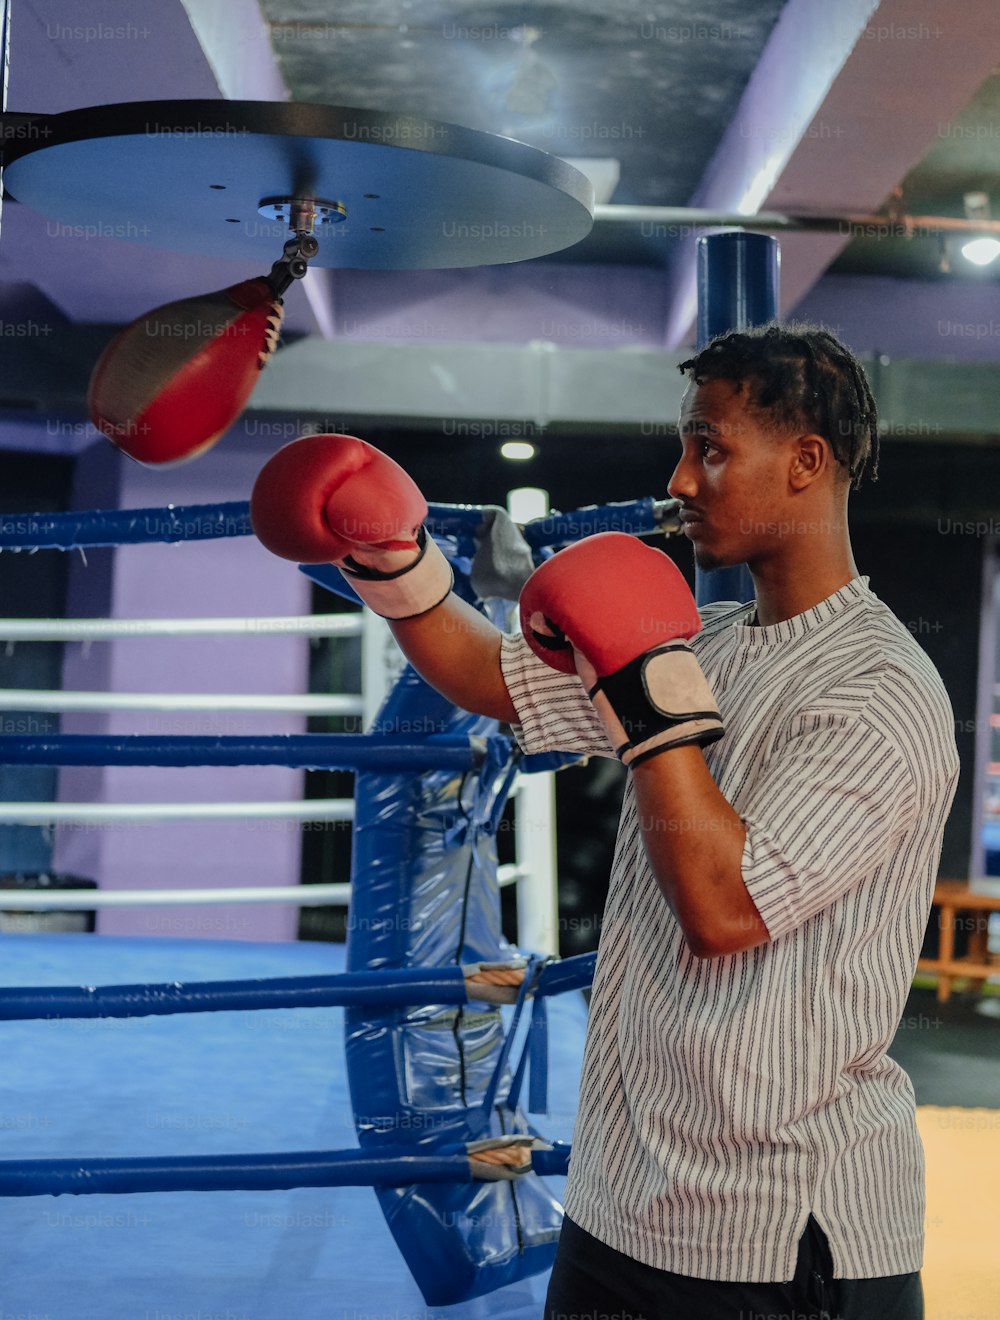 Un homme debout sur un ring de boxe portant des gants de boxe rouges